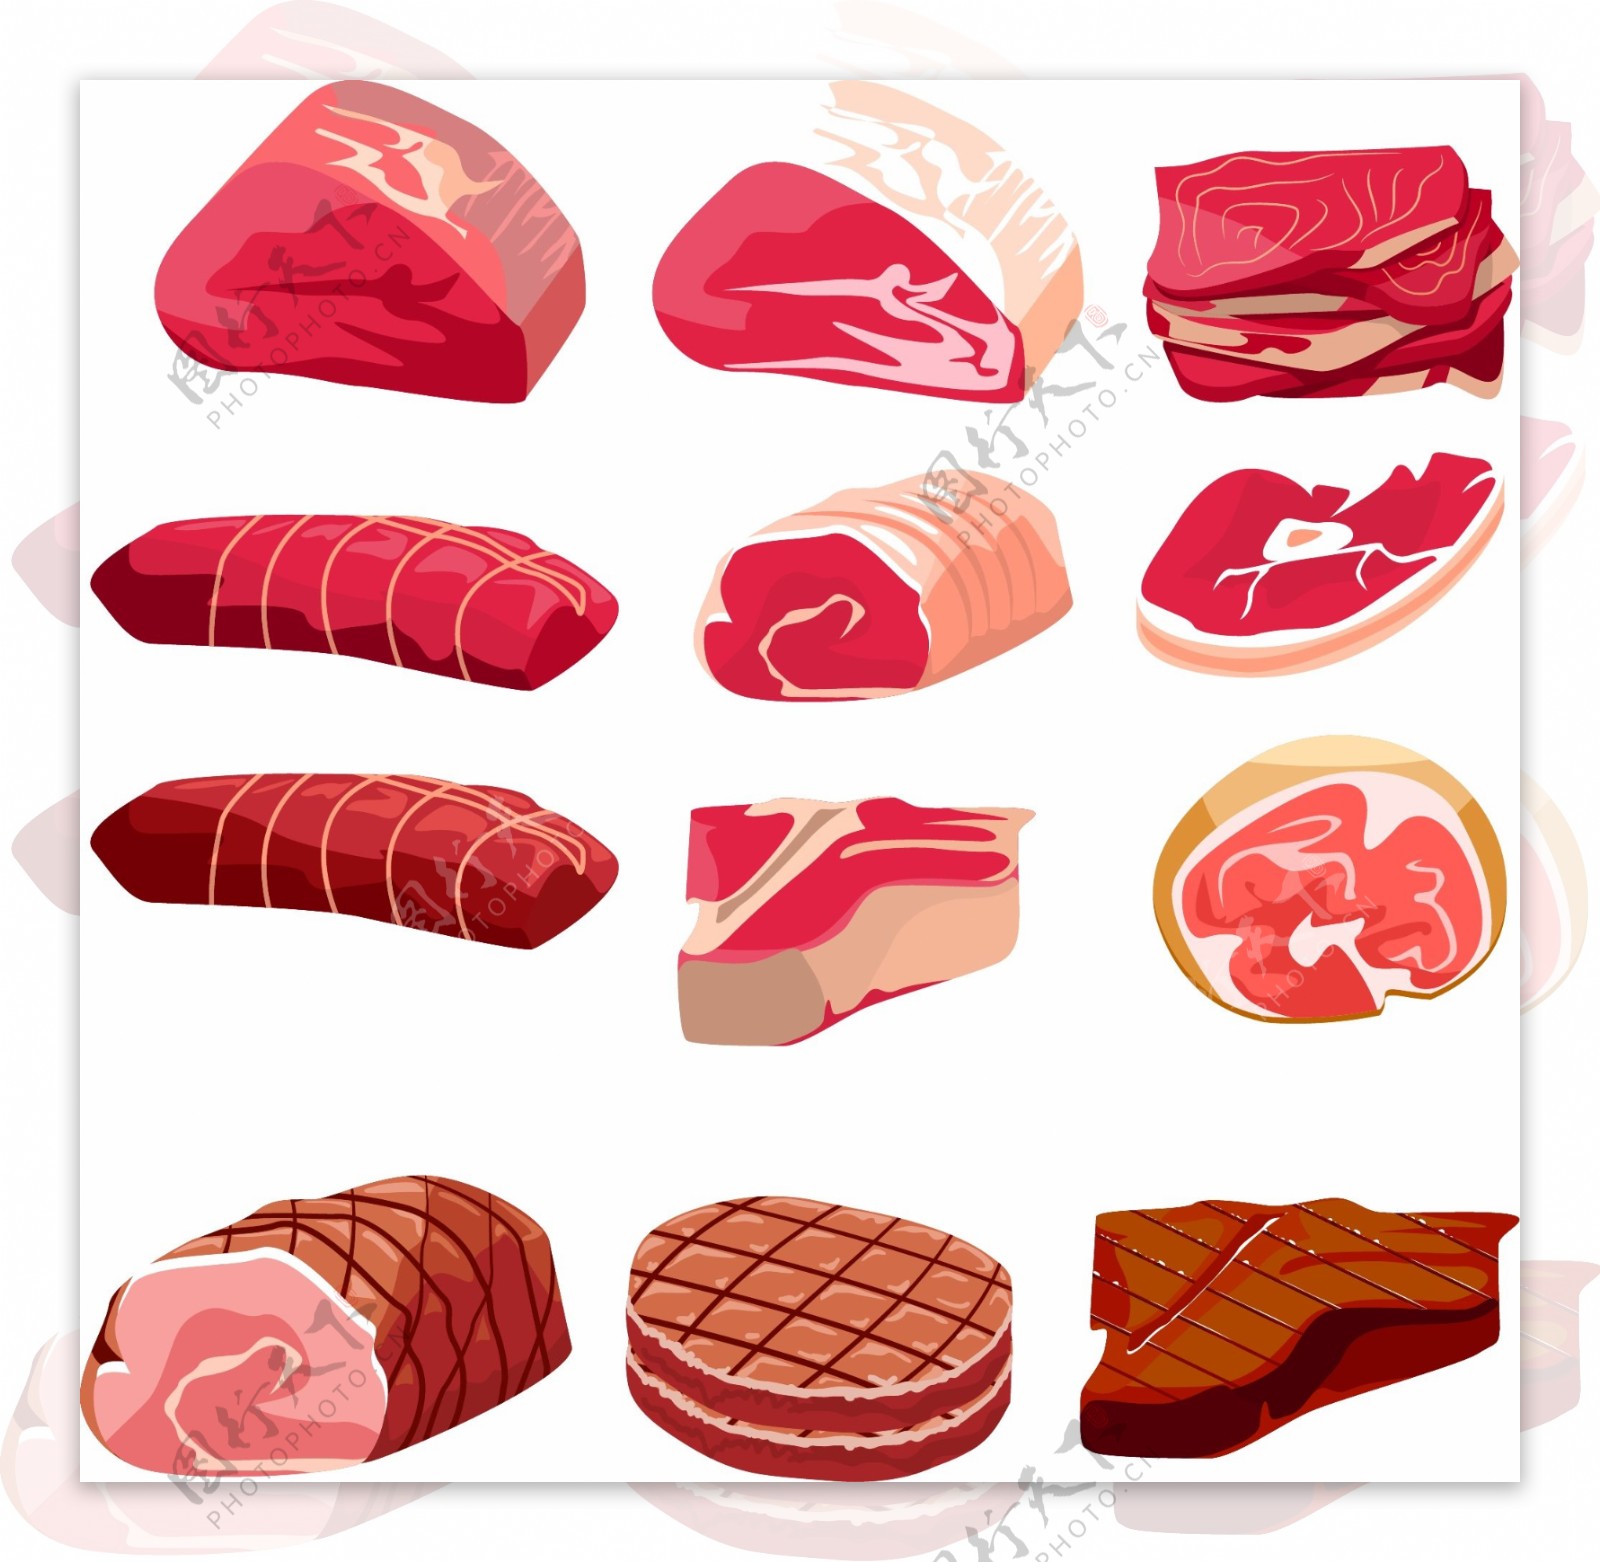 新鲜的肉和火腿图案矢量素材下载